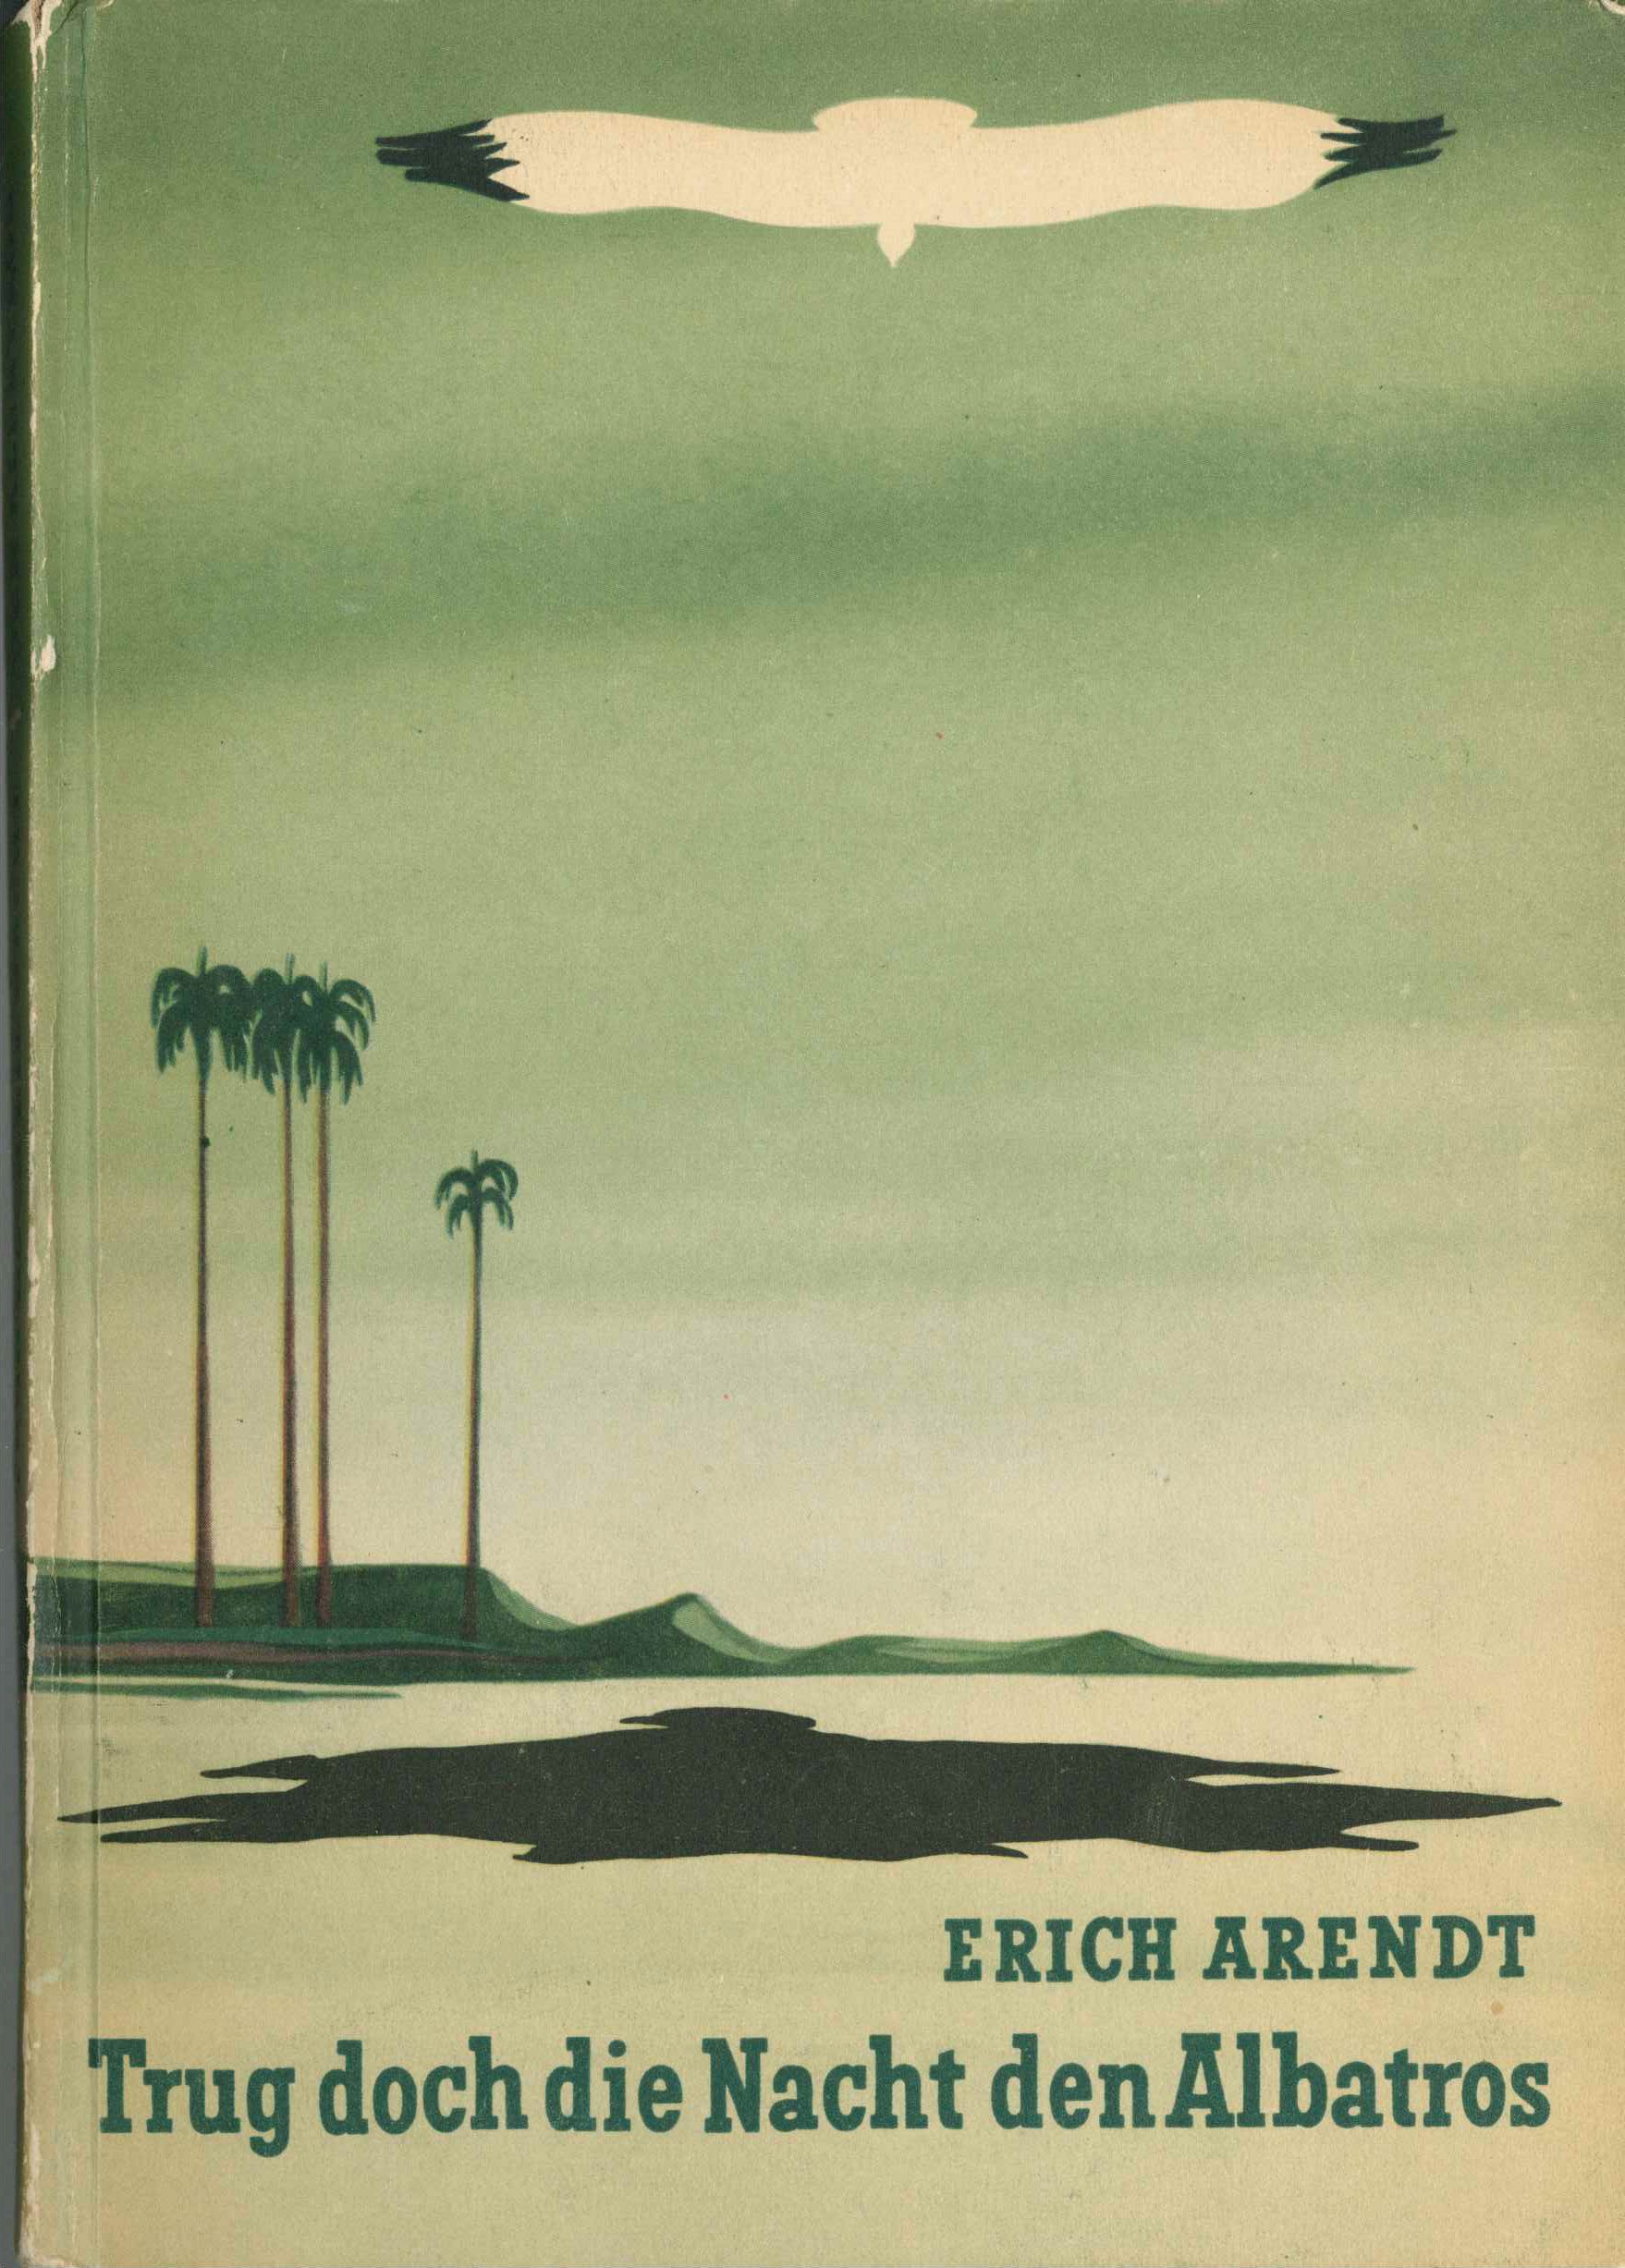 Erich Arendt: Trug doch die Nacht den Albatros (Kurt Tucholsky Literaturmuseum CC BY-NC-SA)